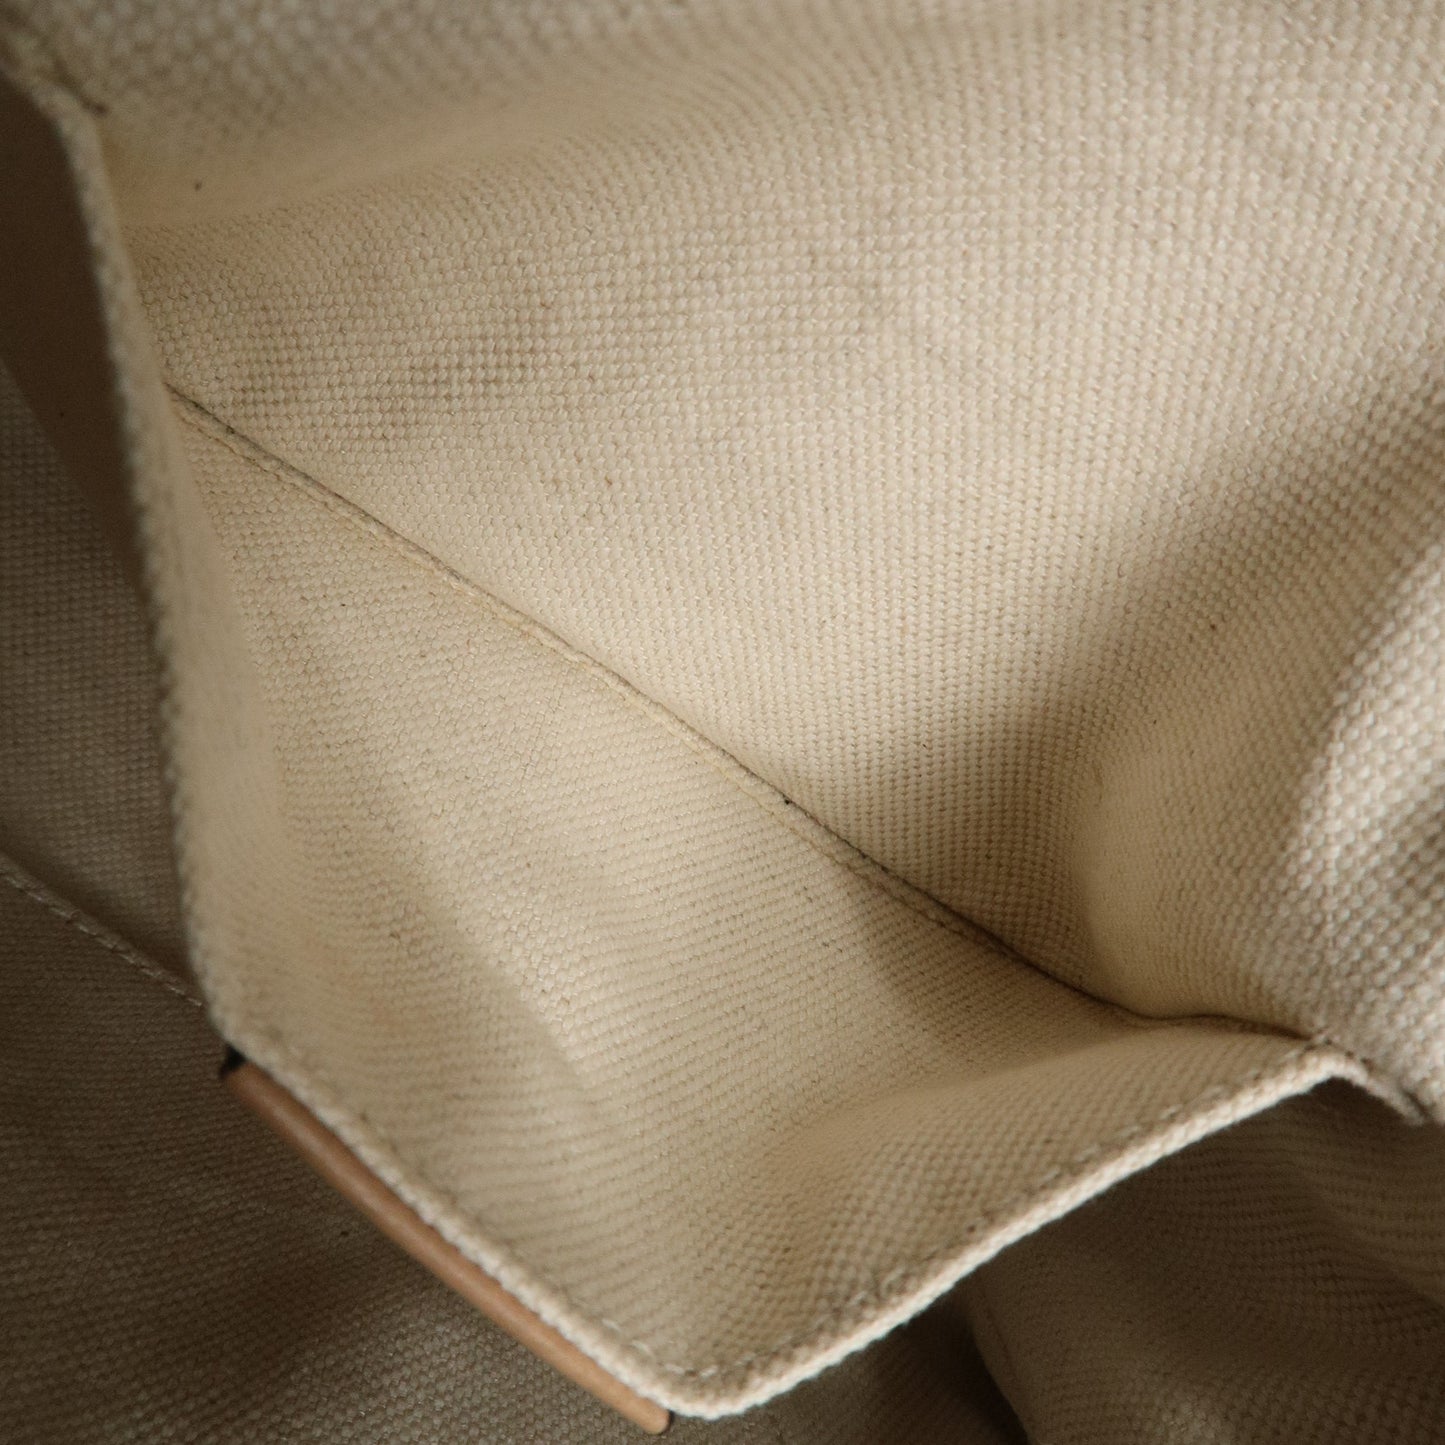 GUCCI Bamboo Leather 2WAY bag Shoulder Bag Pink Beige 368823